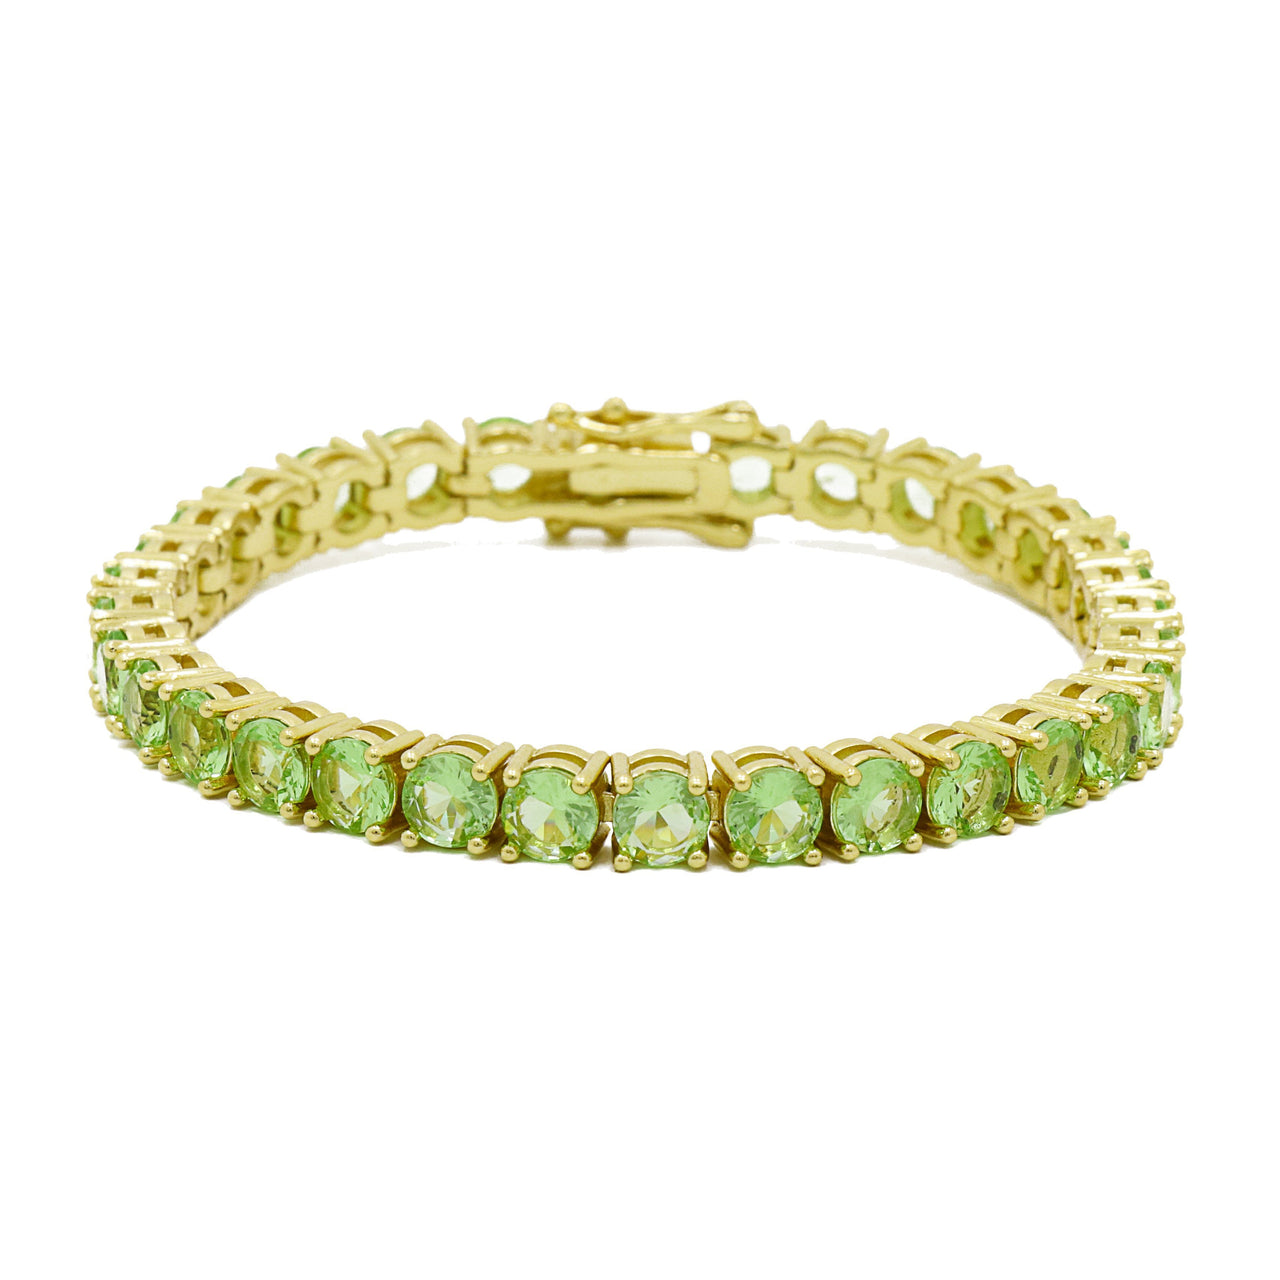 Gigi Tennis Bracelet Light Green/Gold 5Mm 16Cm